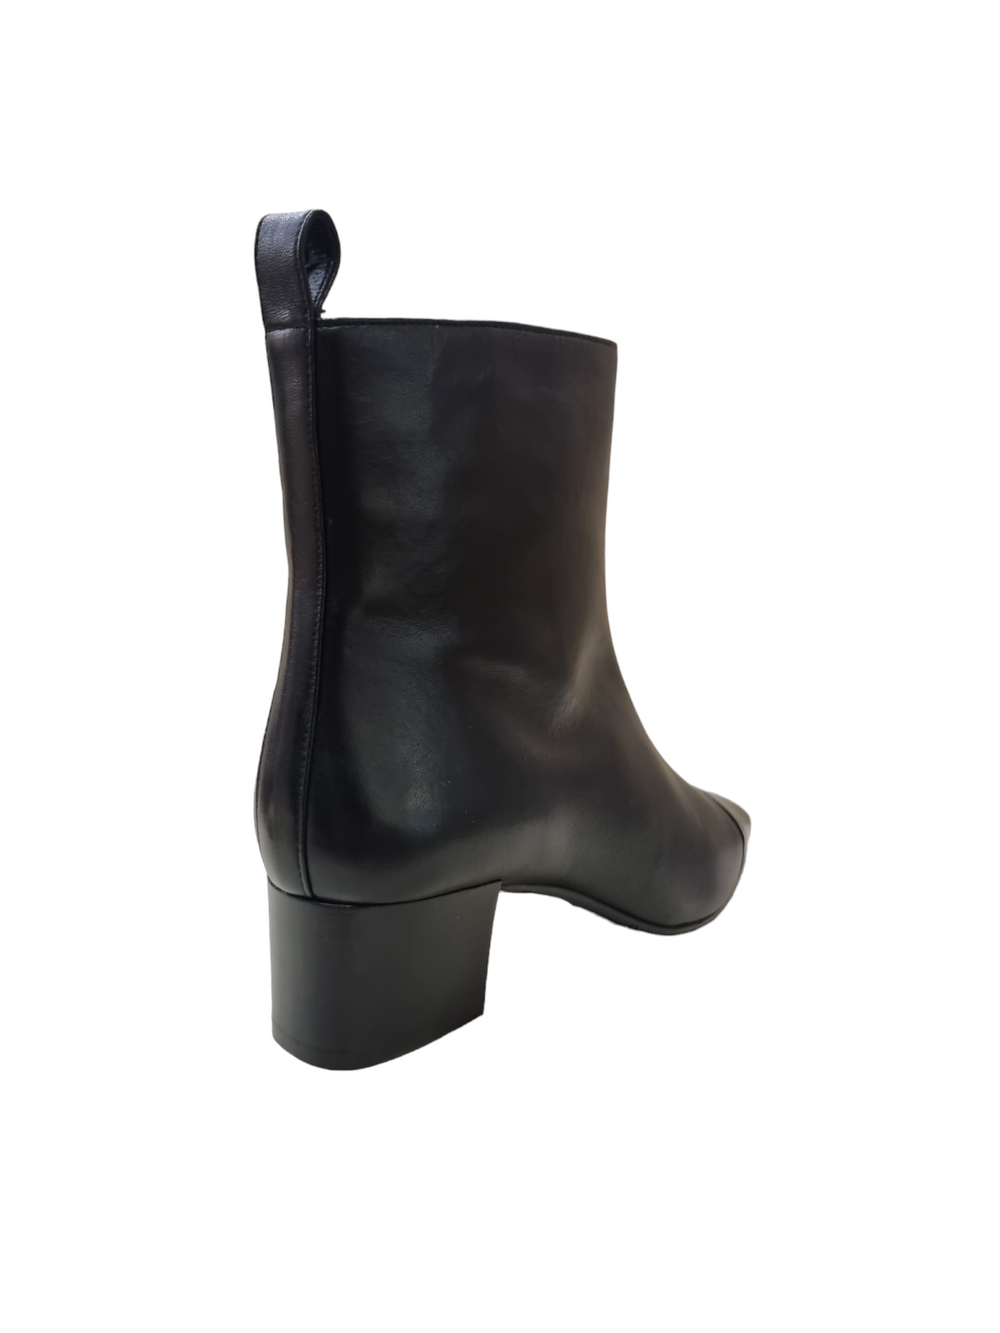 Estime Black Leather Boots - Carel Paris - Liberty Shoes Australia